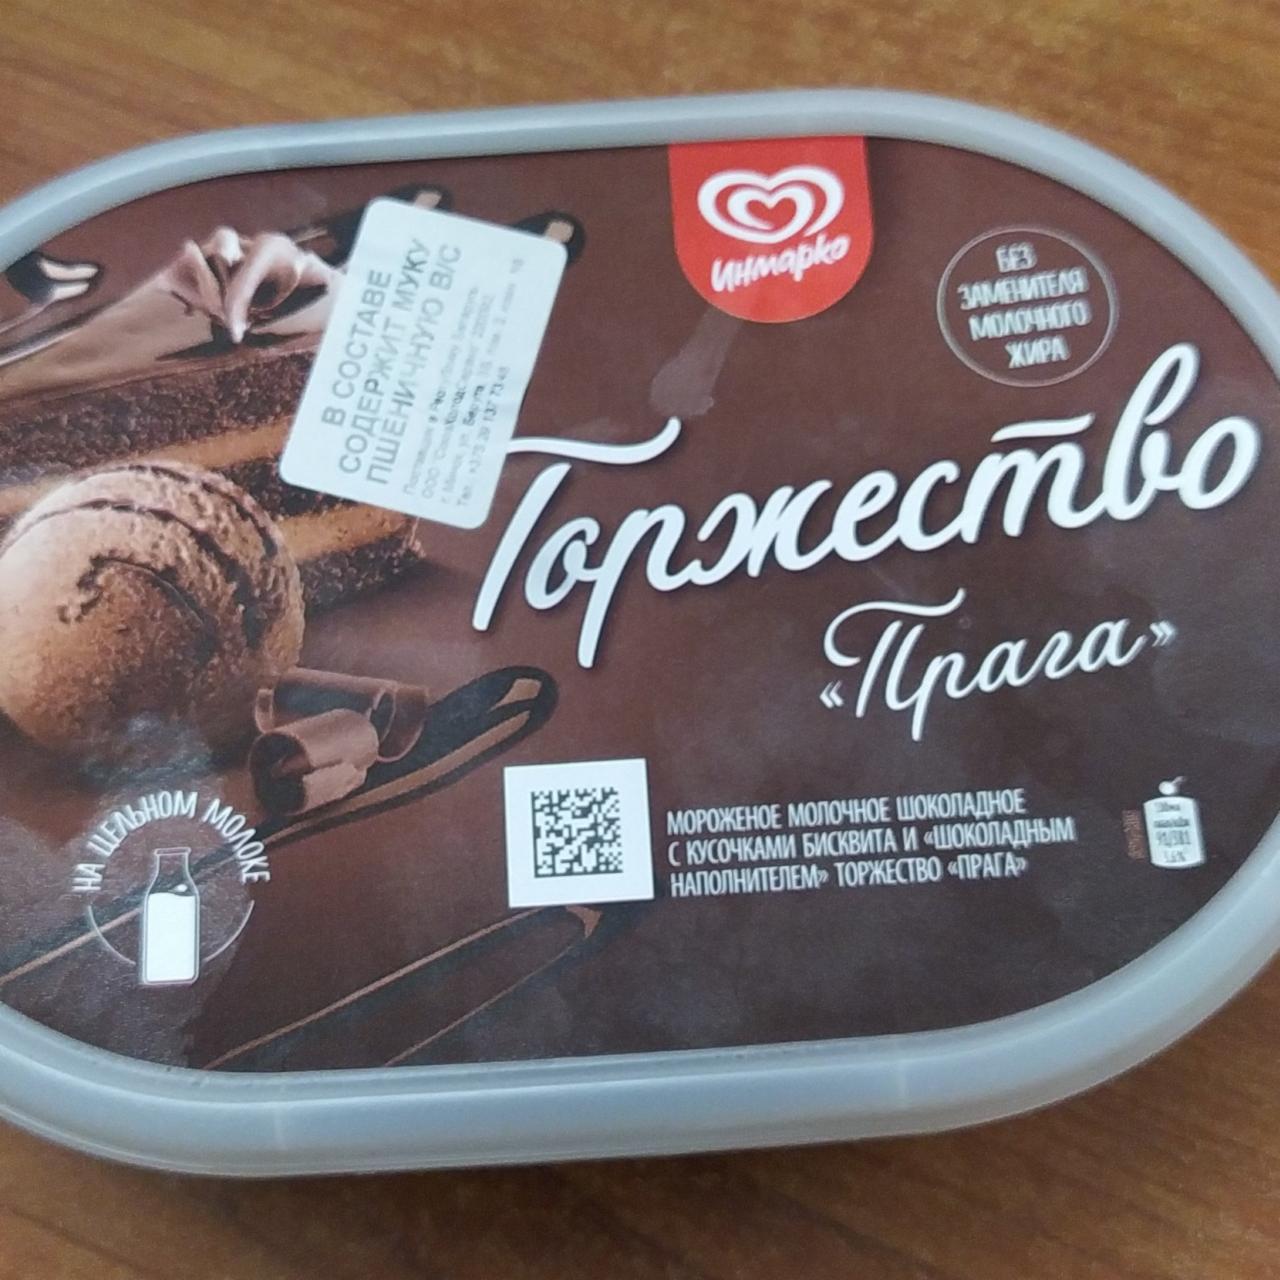 Фото - Мороженное молочное шоколадное с кусочками бисквита и шоколадным наполнителем торжество Прага Инмарко